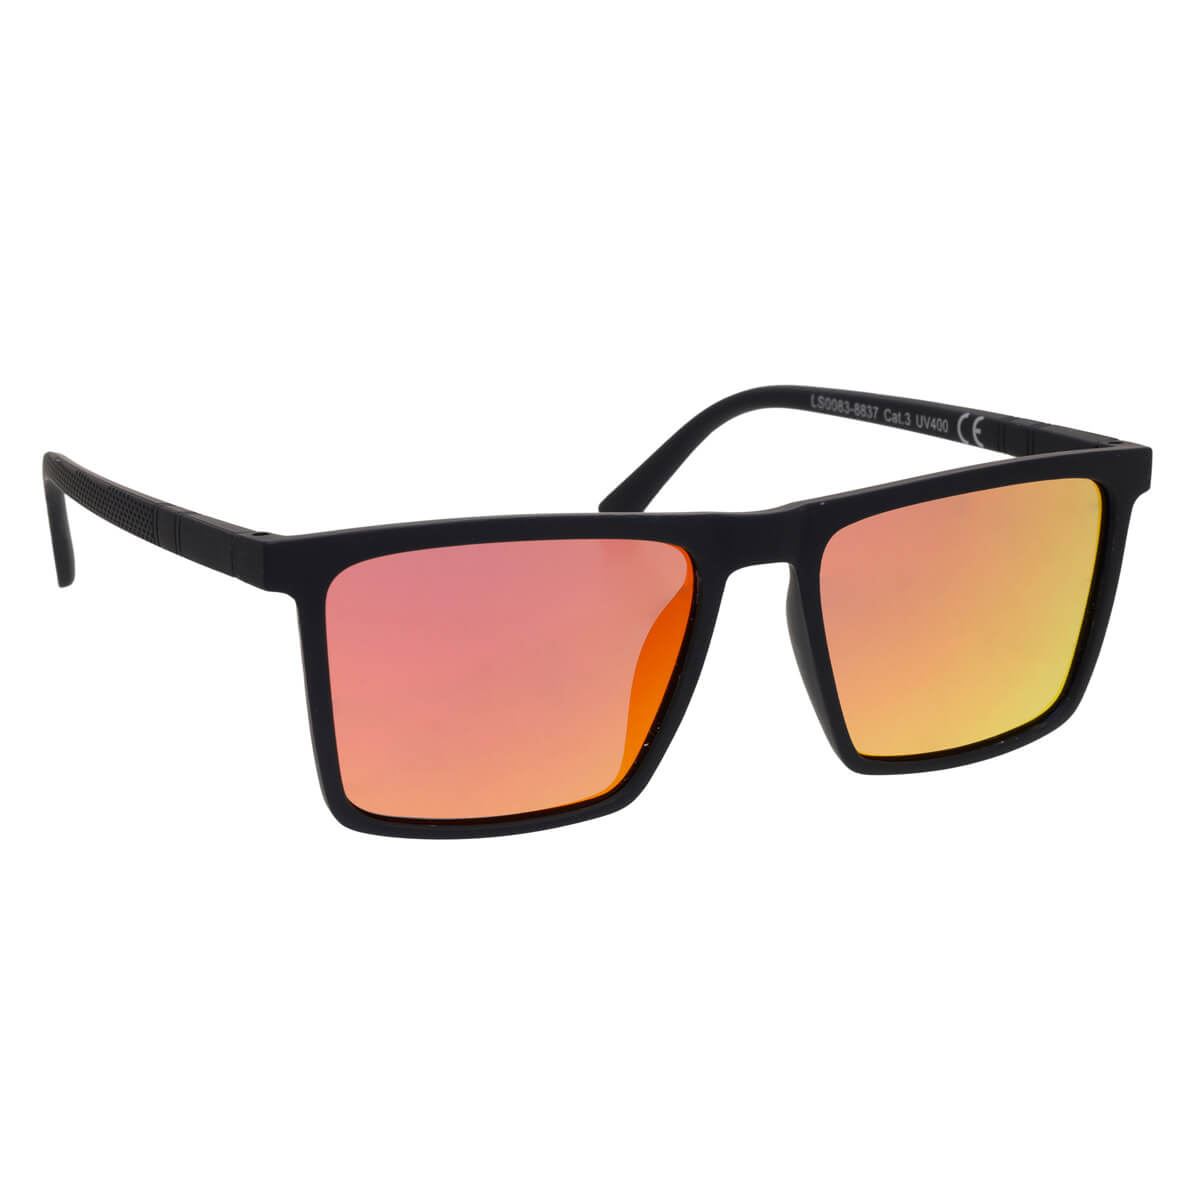 Polarised angled sunglasses